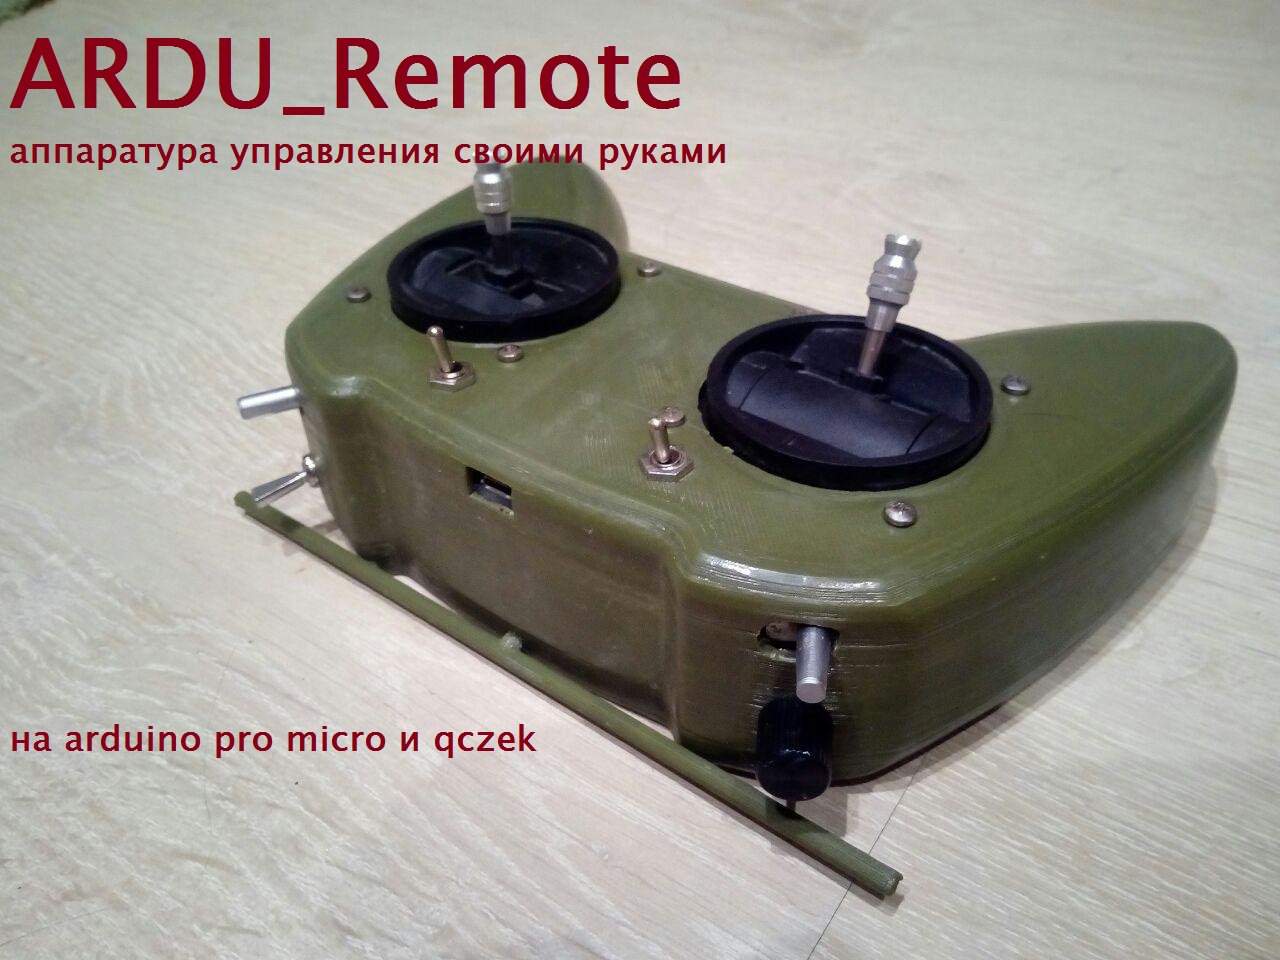 Пульт радиоуправления для бетононасоса Hetronic NOVA XL 2.8 по цене 10 руб., купить в Москве